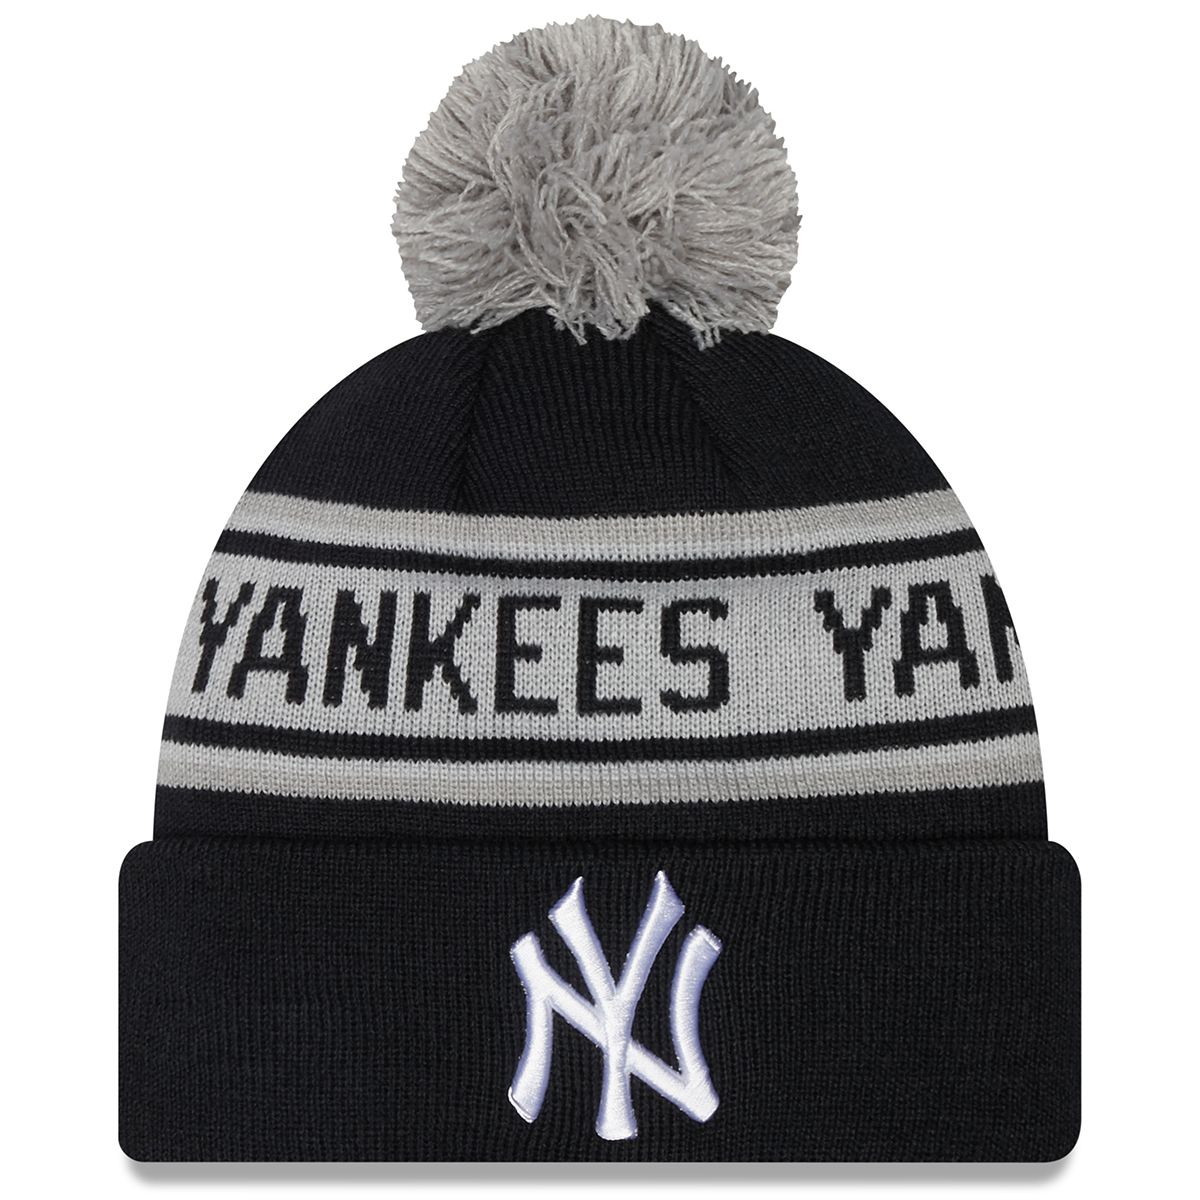 Yankees Boobs (@YankeesBoobs) / X